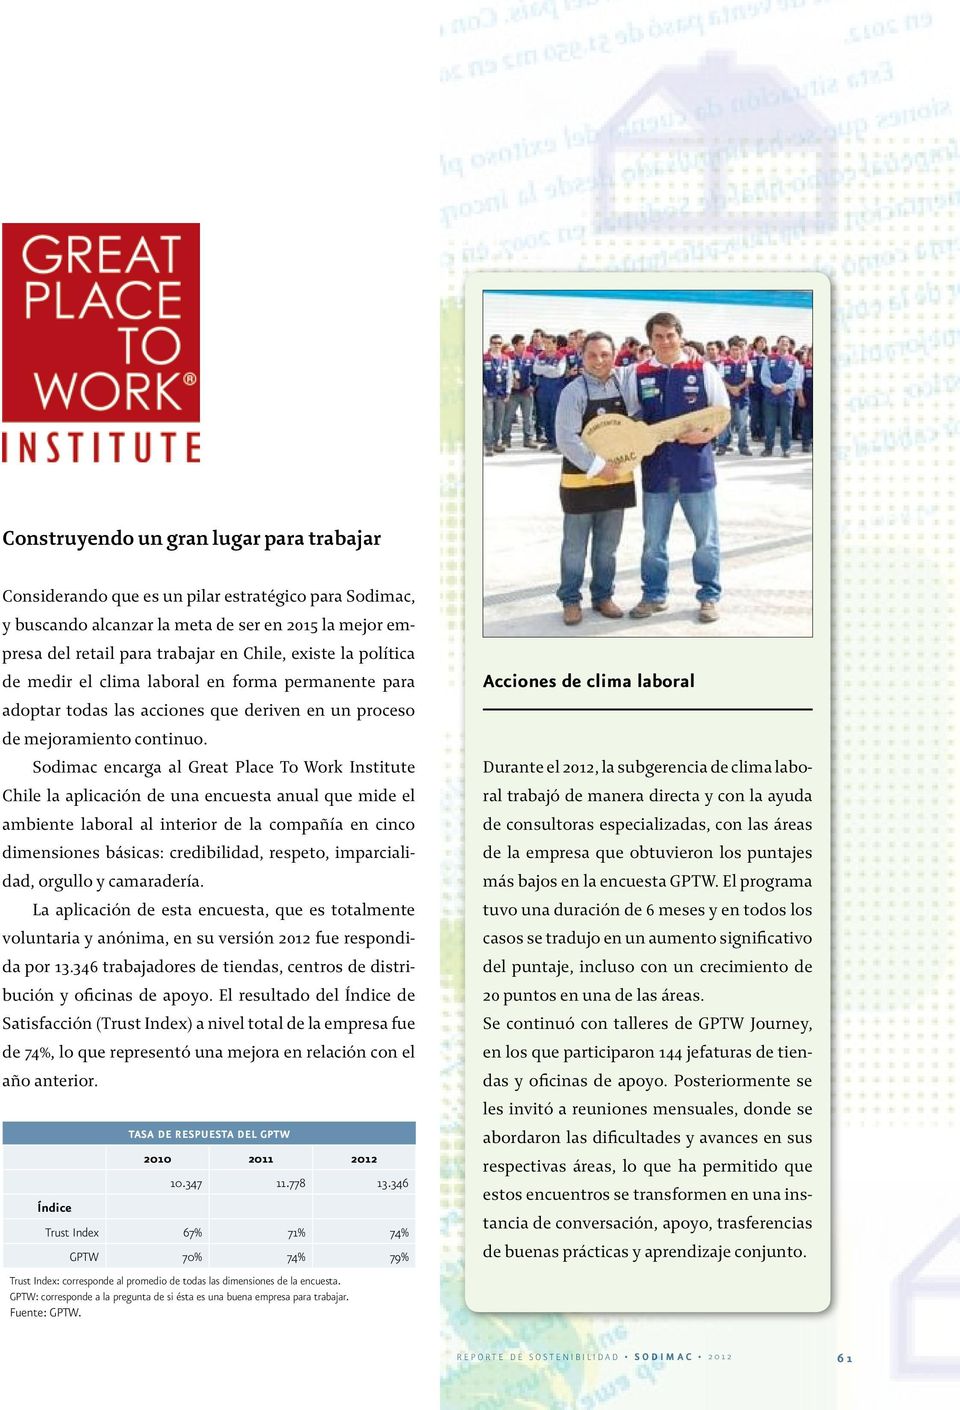 Sodimac encarga al Great Place To Work Institute Chile la aplicación de una encuesta anual que mide el ambiente laboral al interior de la compañía en cinco dimensiones básicas: credibilidad, respeto,